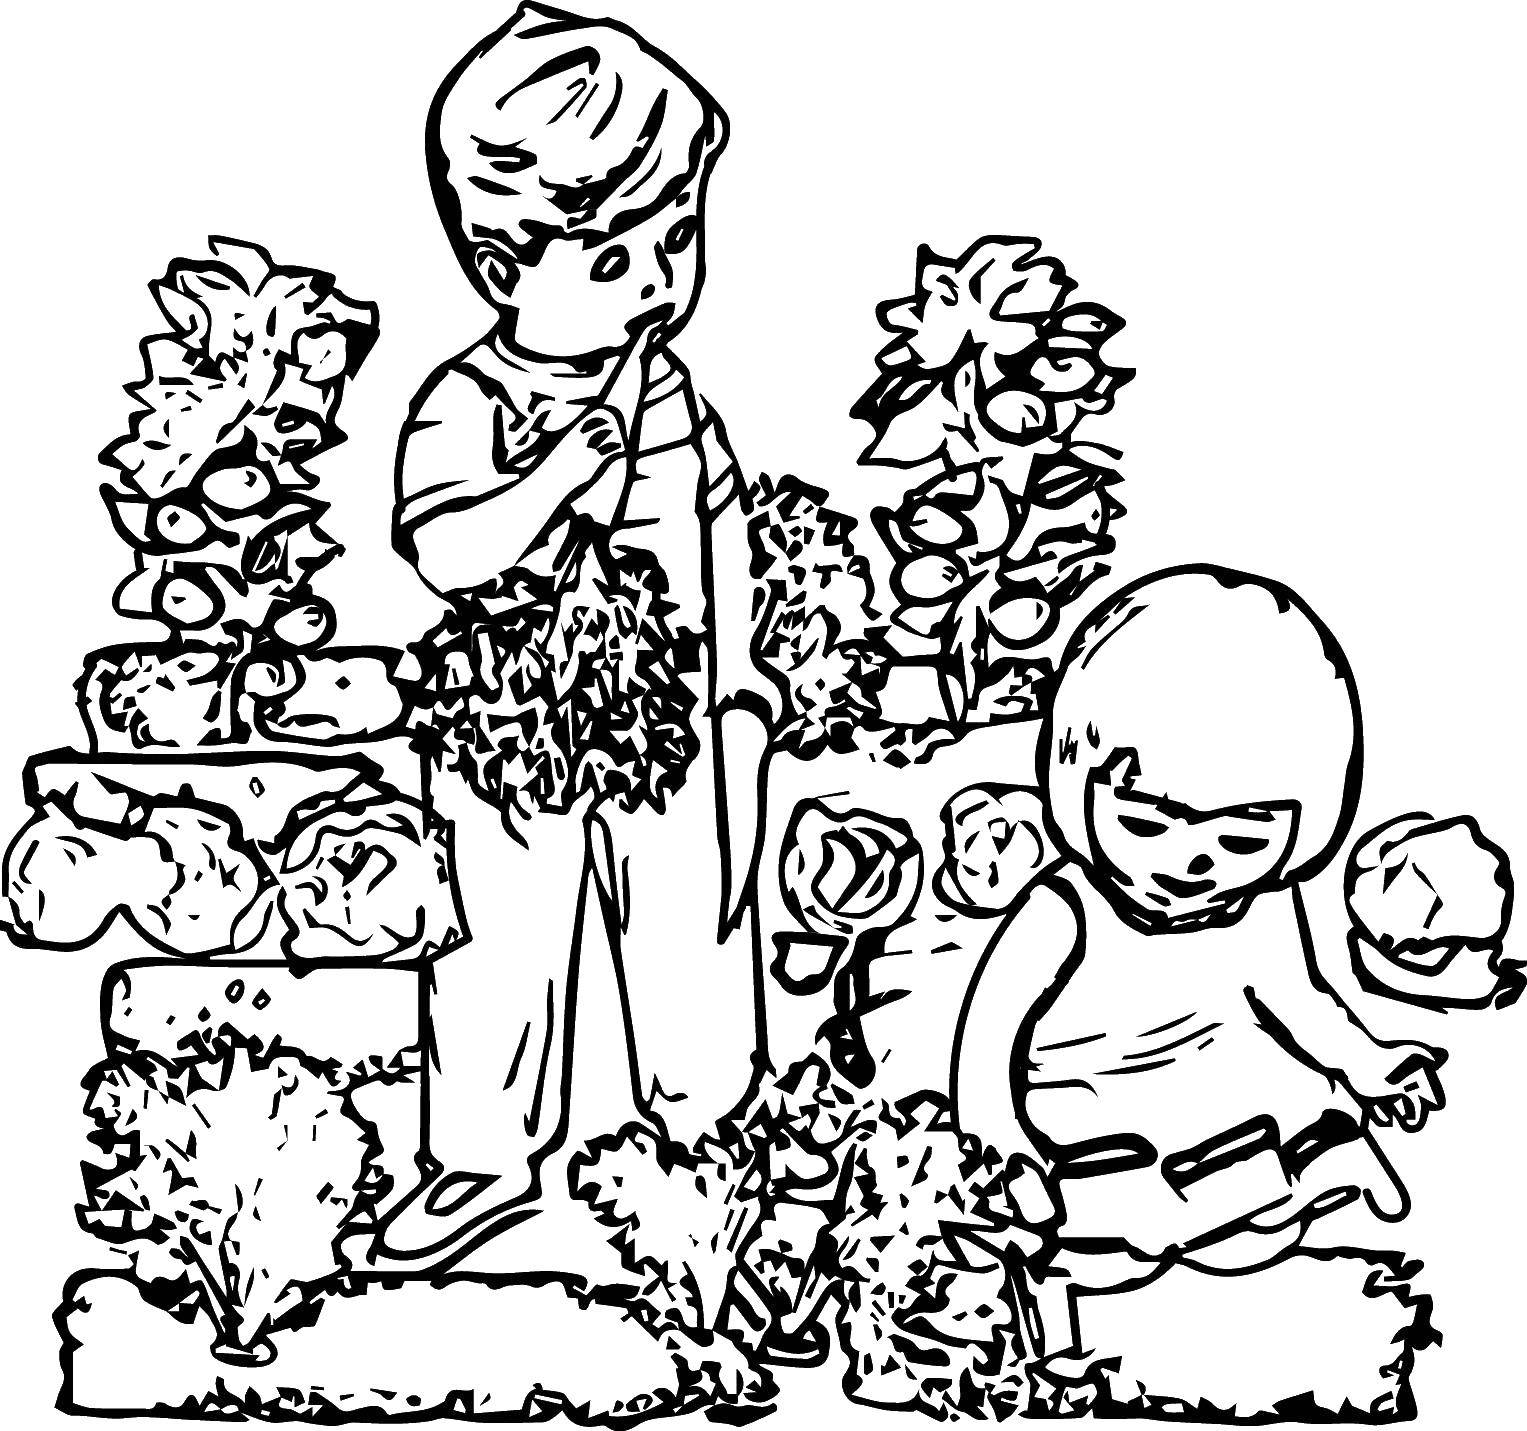 Опис: розмальовки  Діти їдять моркву. Категорія: город. Теги:  діти, город.